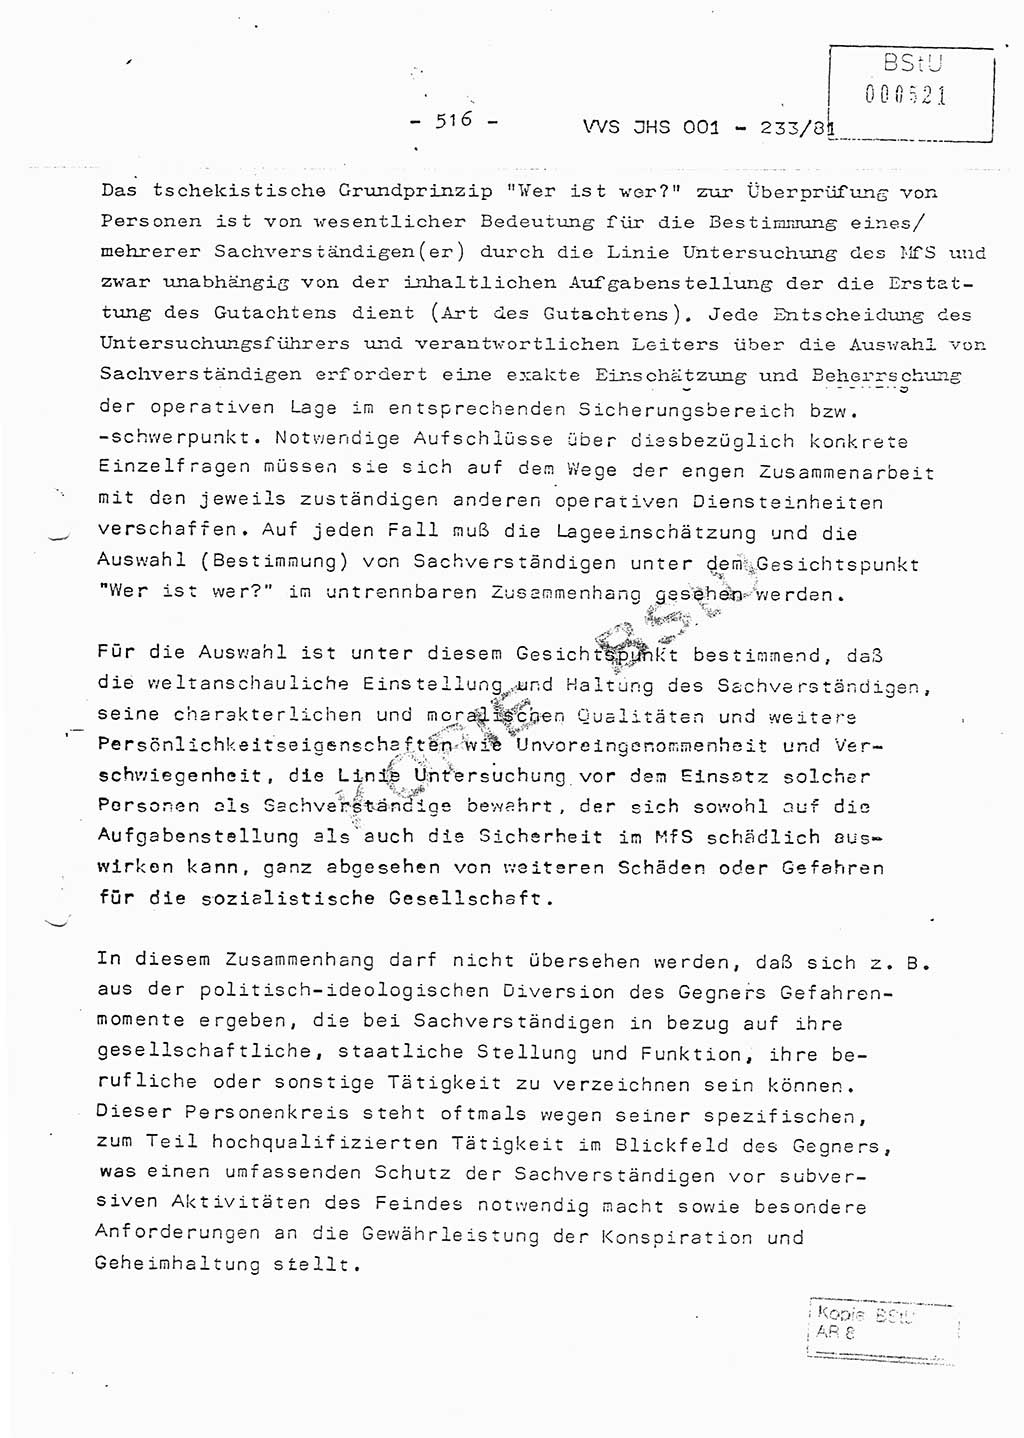 Dissertation Oberstleutnant Horst Zank (JHS), Oberstleutnant Dr. Karl-Heinz Knoblauch (JHS), Oberstleutnant Gustav-Adolf Kowalewski (HA Ⅸ), Oberstleutnant Wolfgang Plötner (HA Ⅸ), Ministerium für Staatssicherheit (MfS) [Deutsche Demokratische Republik (DDR)], Juristische Hochschule (JHS), Vertrauliche Verschlußsache (VVS) o001-233/81, Potsdam 1981, Blatt 516 (Diss. MfS DDR JHS VVS o001-233/81 1981, Bl. 516)